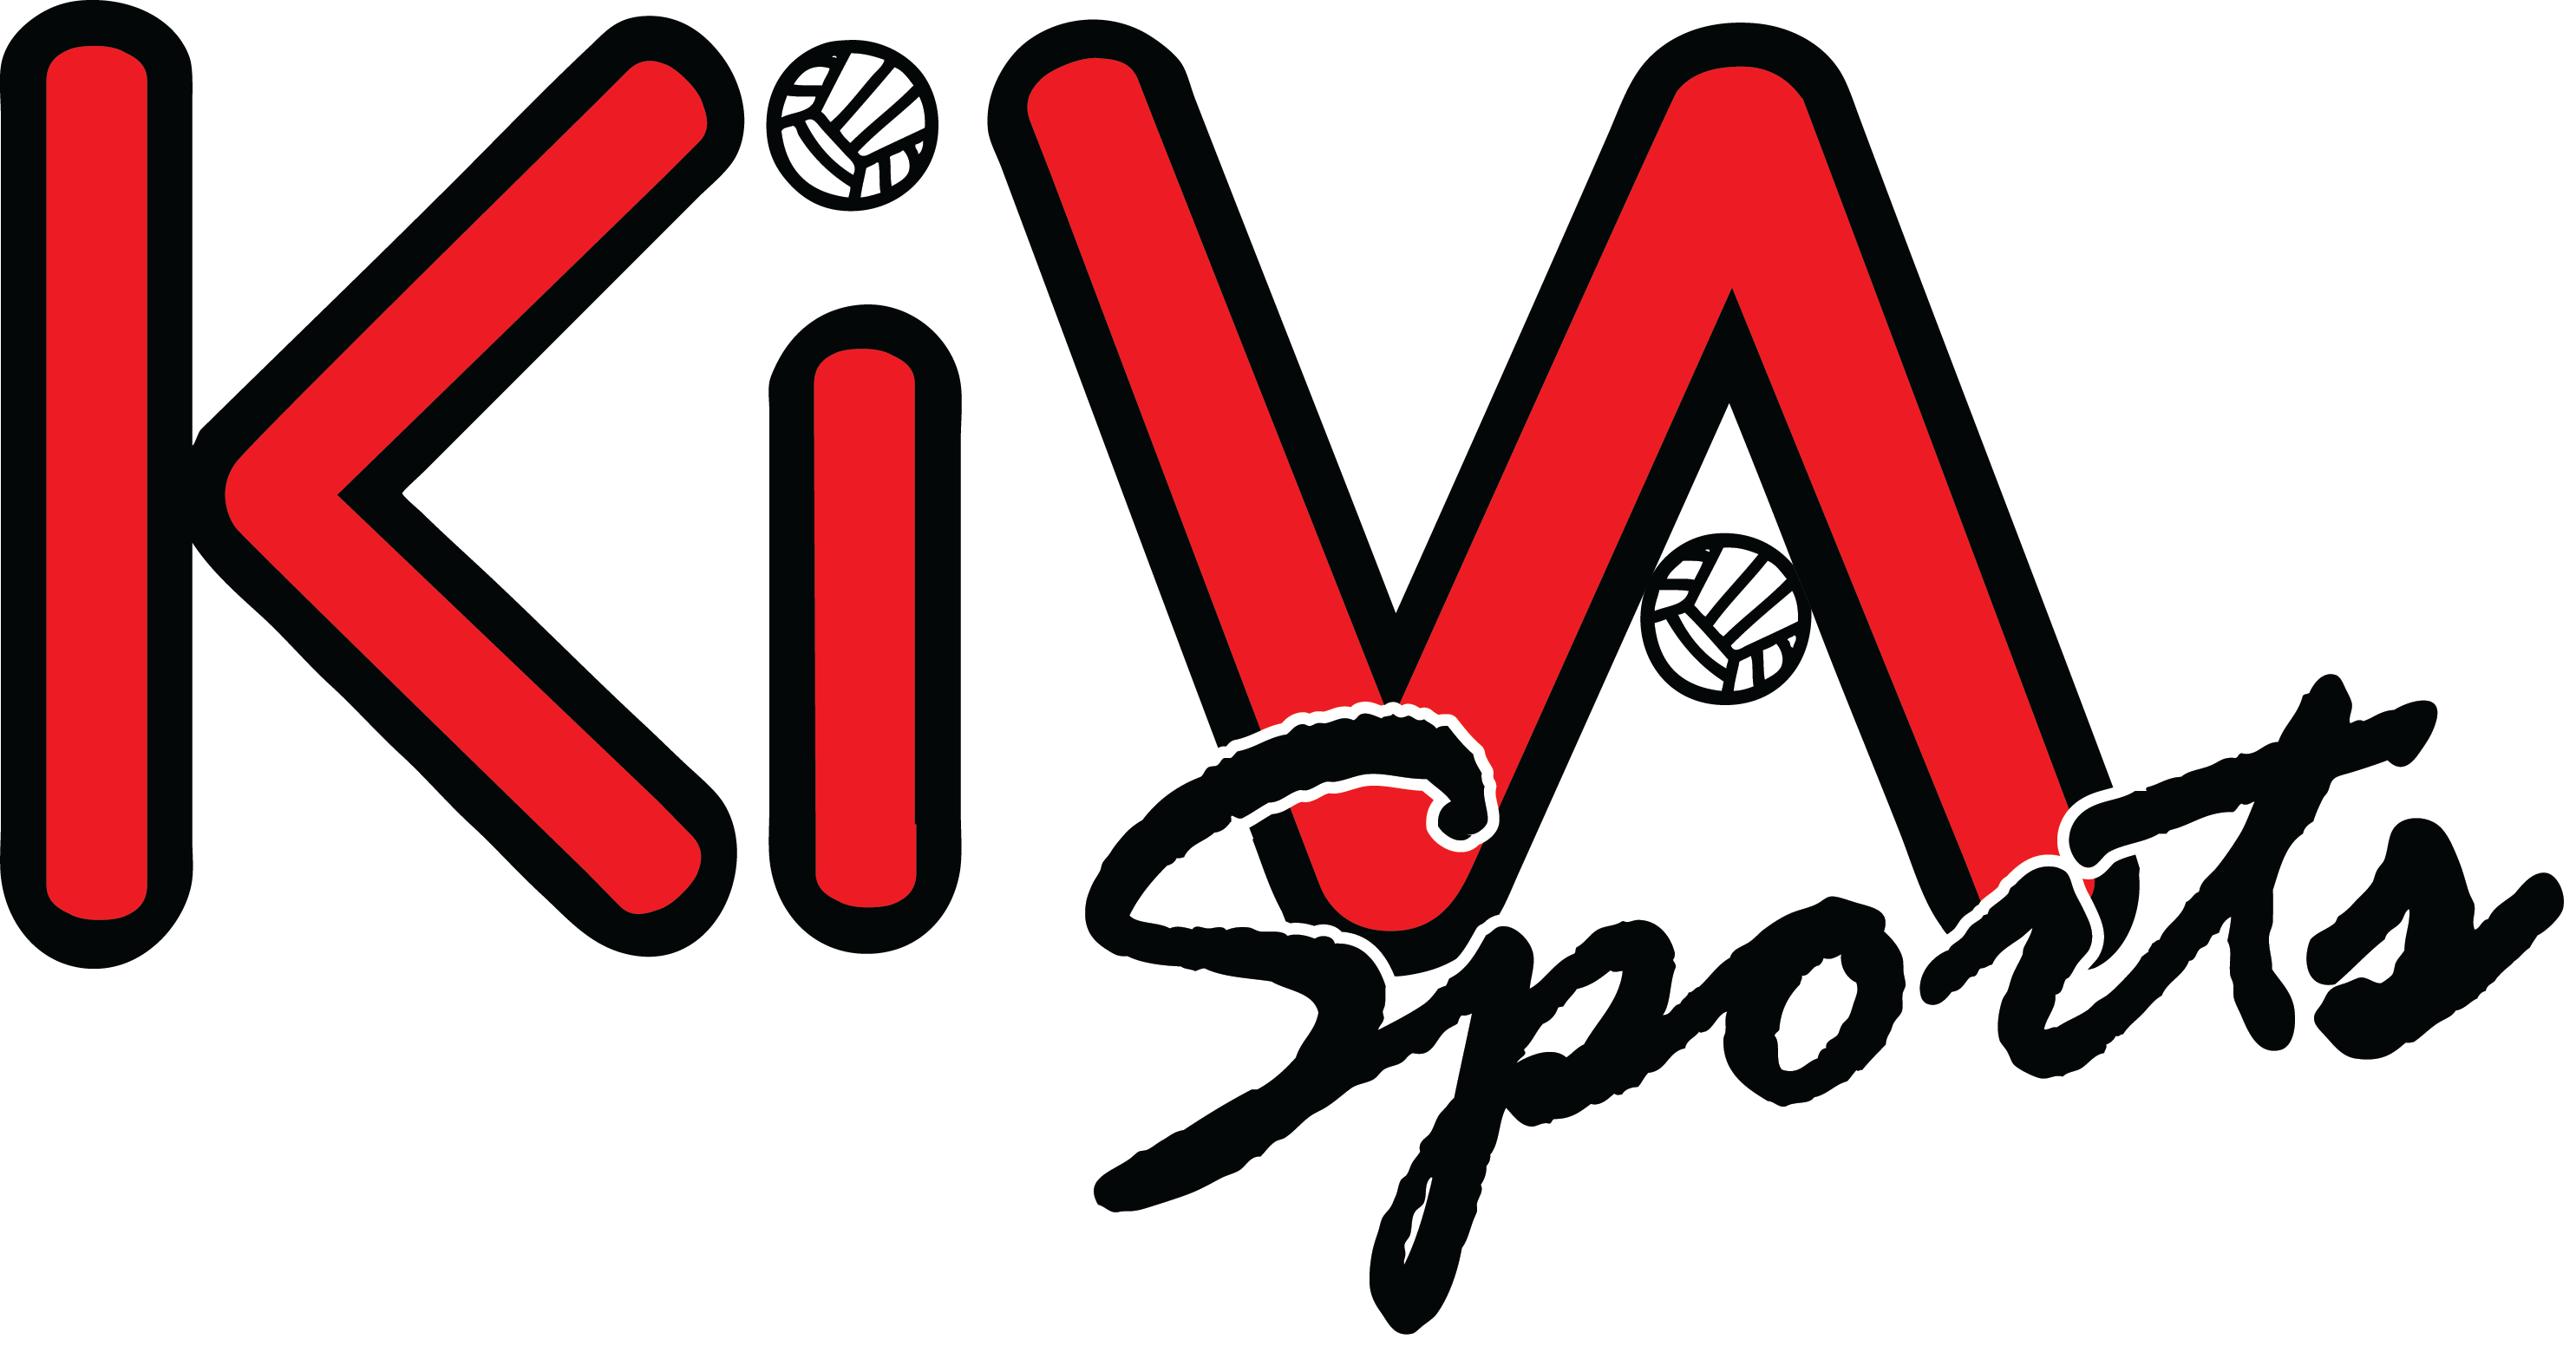 KIVA Sports vector logo